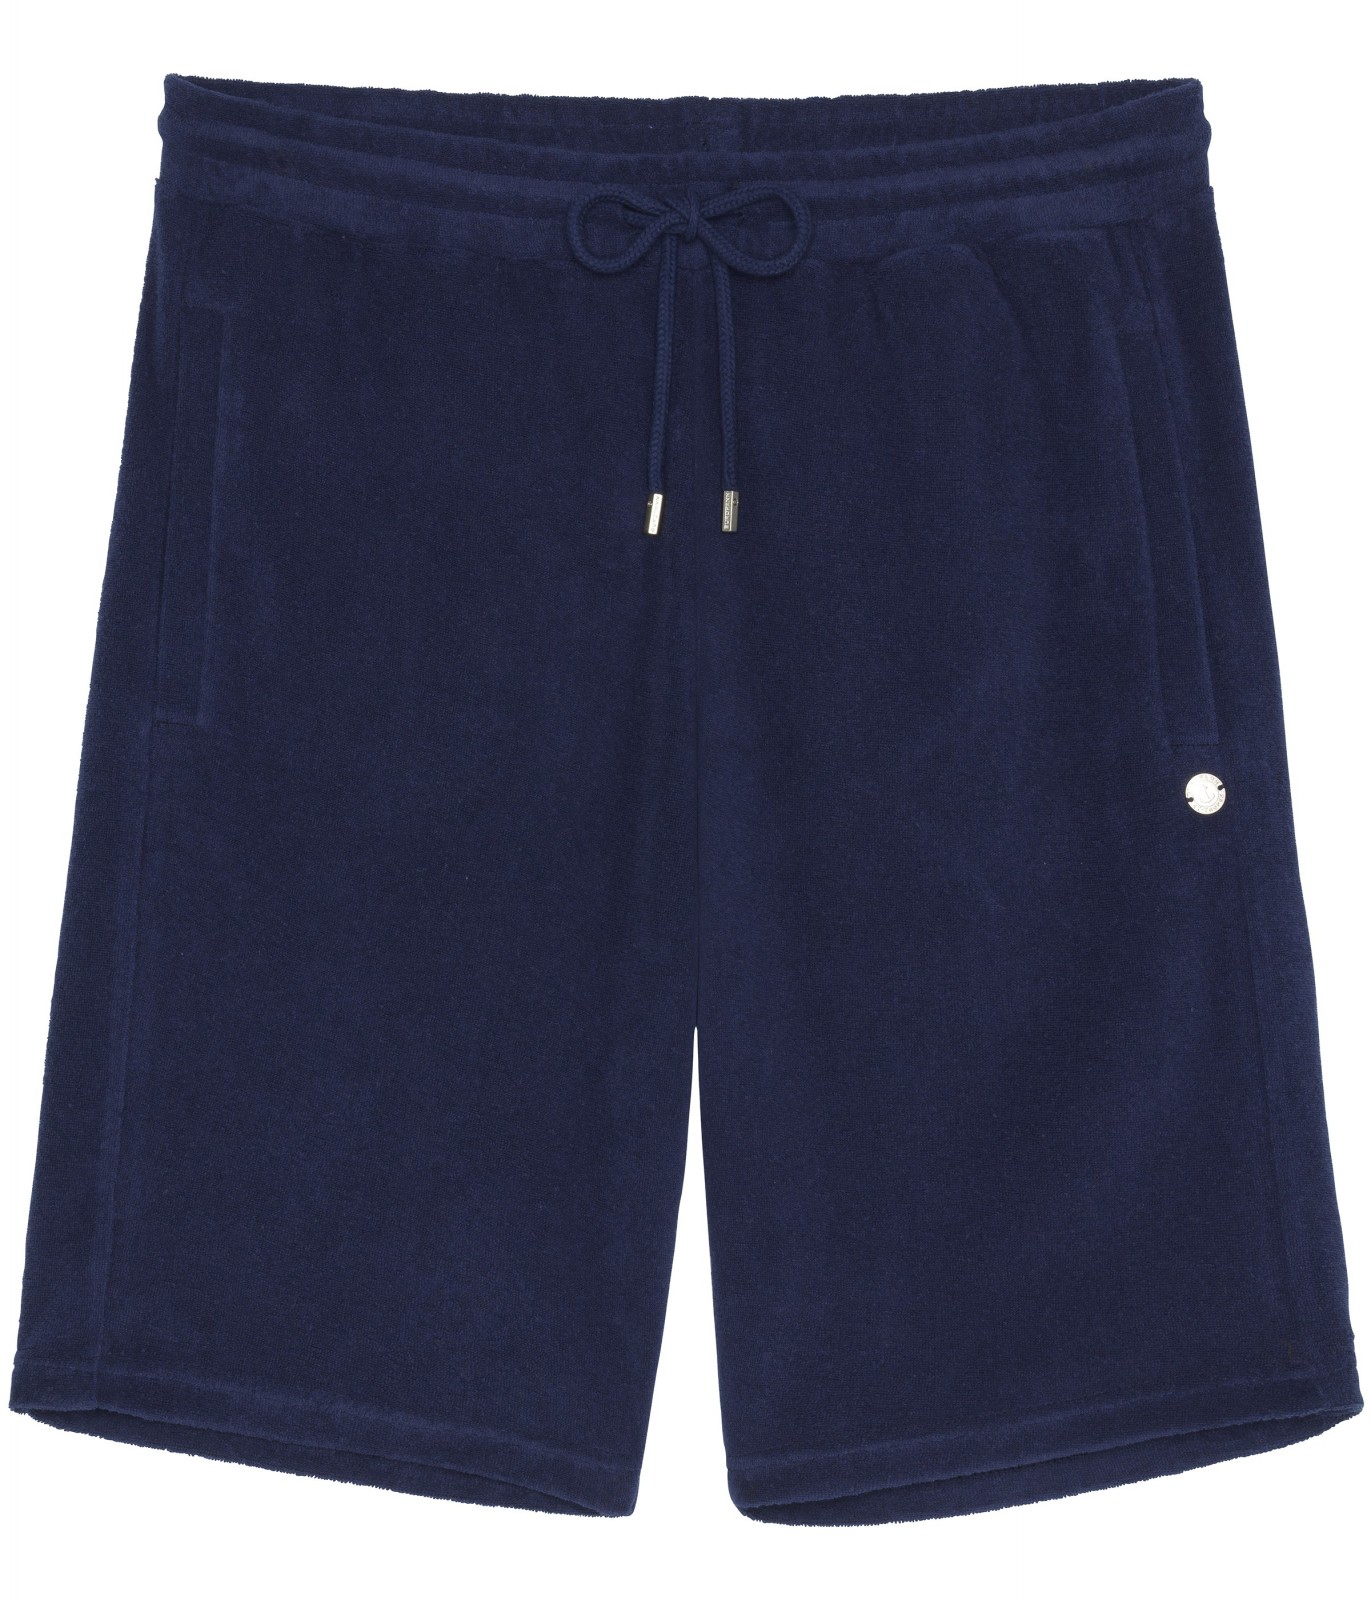 Navy blue sponge Jogging short | Quality brand Europann